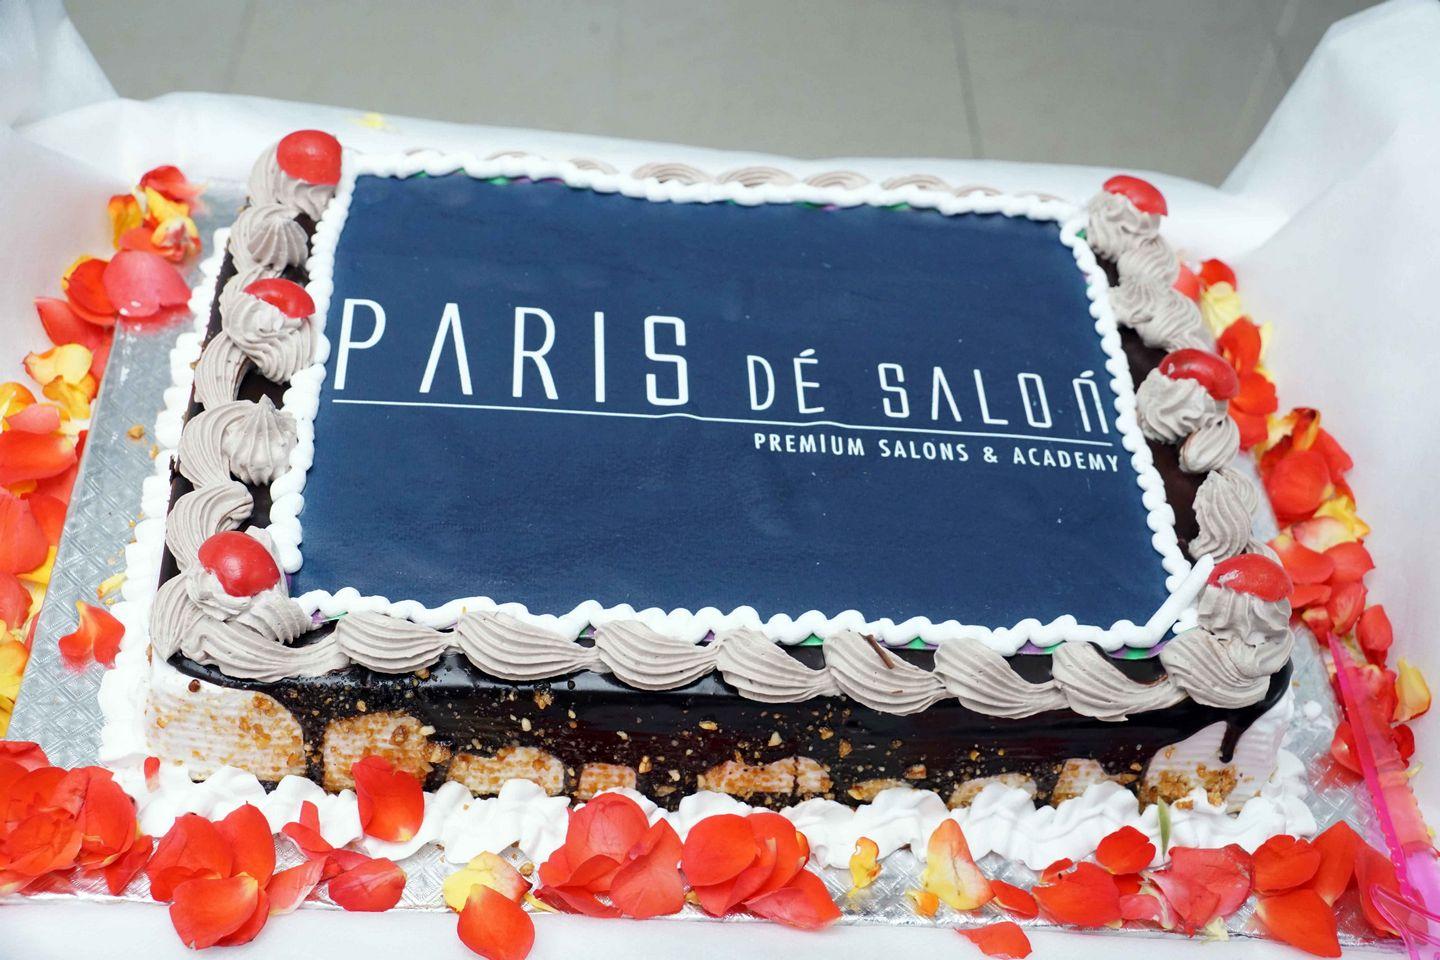 Diksha Panth Launches Paris De Salon